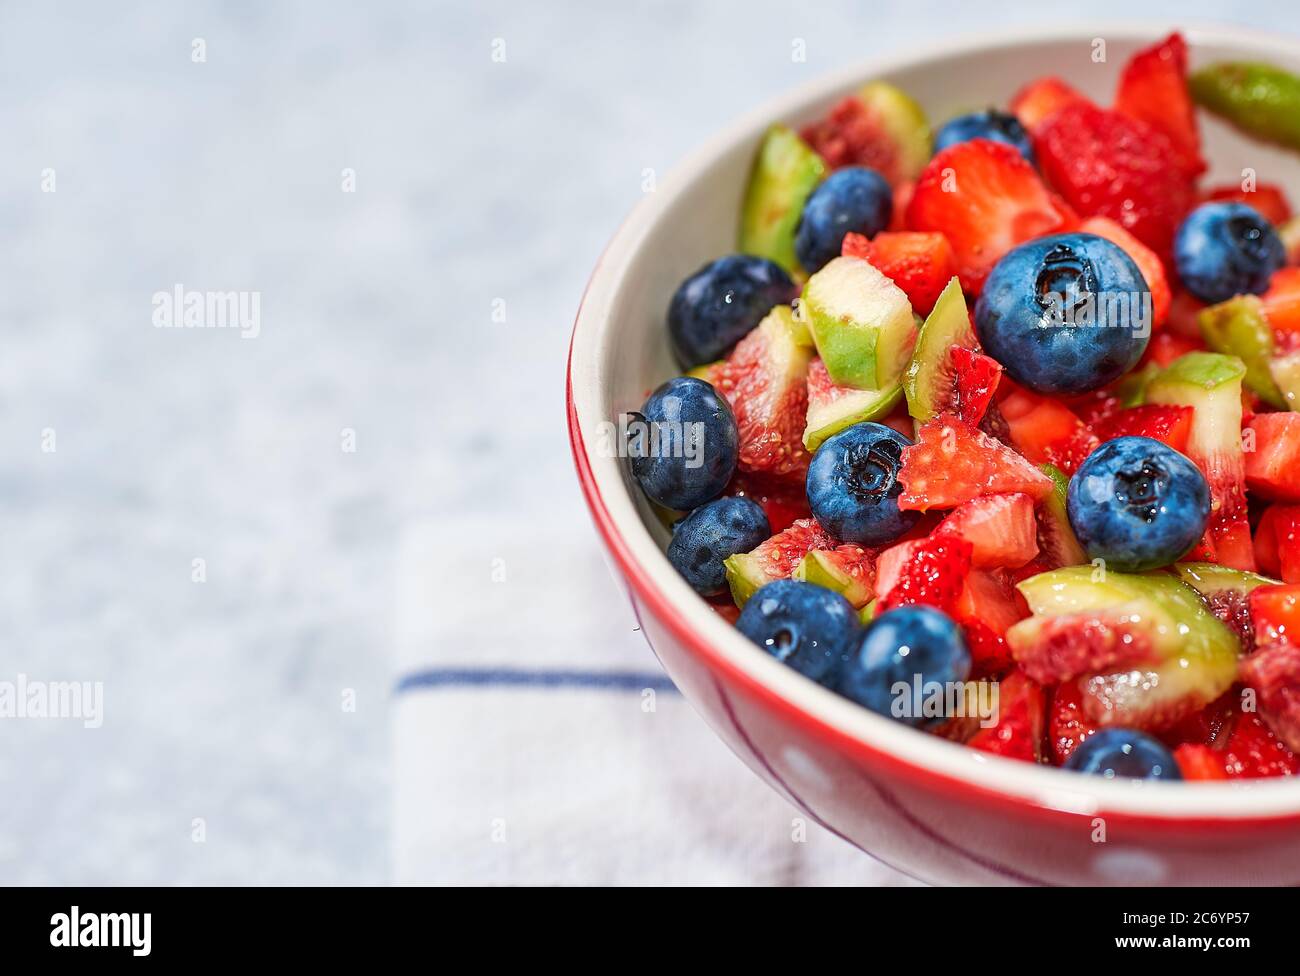 Schüssel mit Obstsalat Abb. Erdbeere Heidelbeere, Konzept Diät und gesunde Ernährung Stockfoto